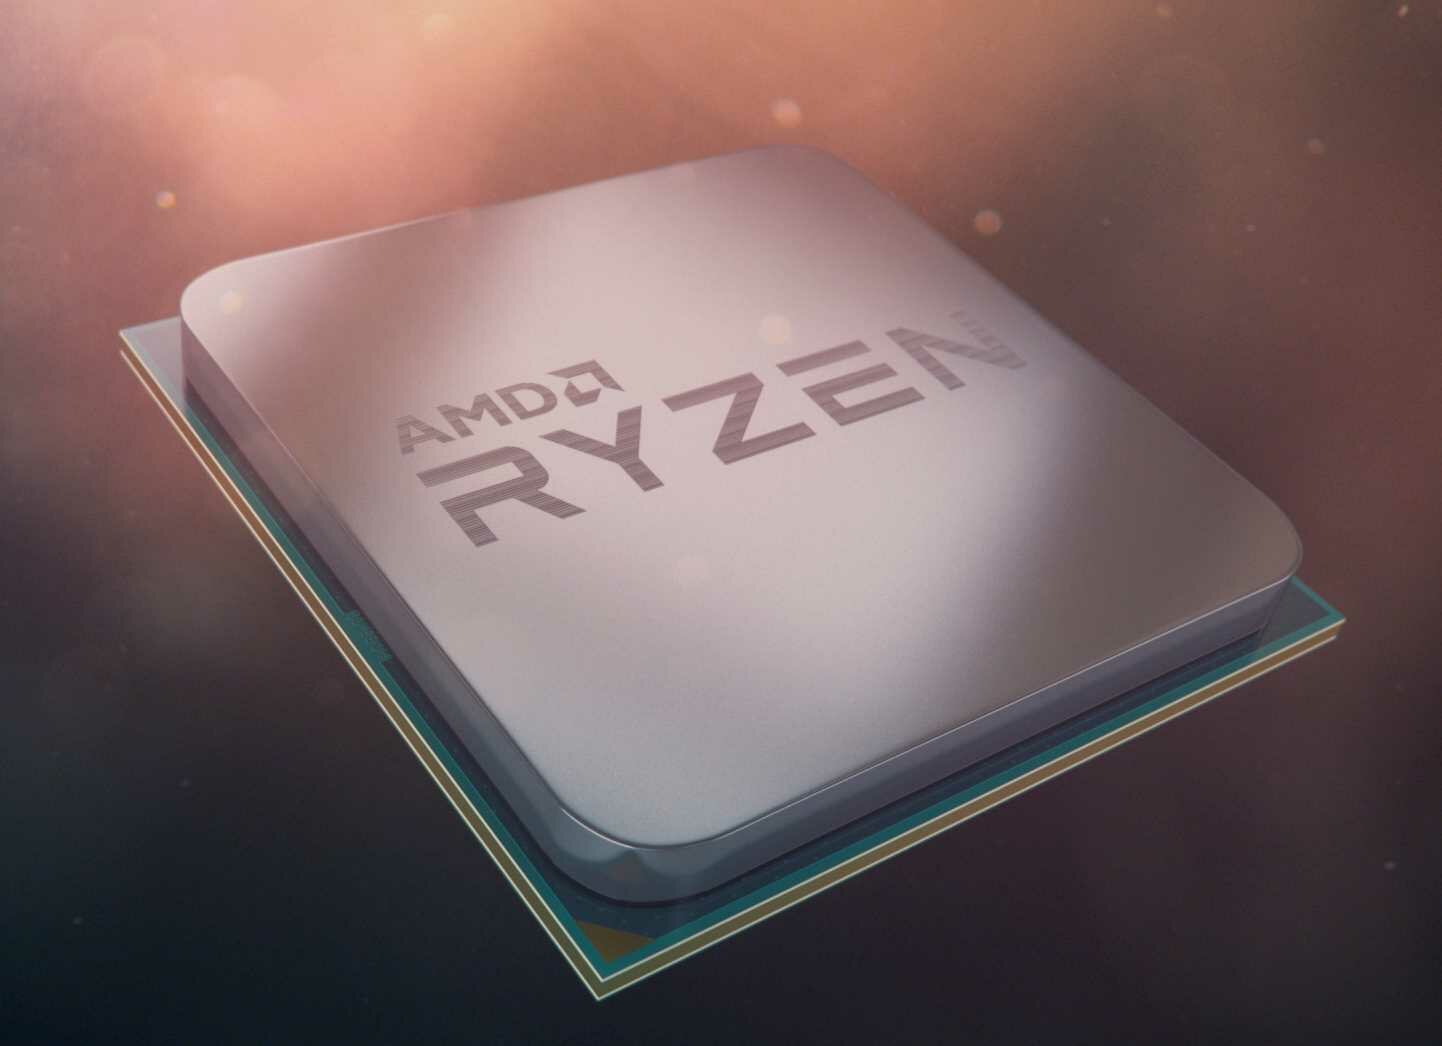 Procesor AMD Ryzen 3 - PCIe 4.0